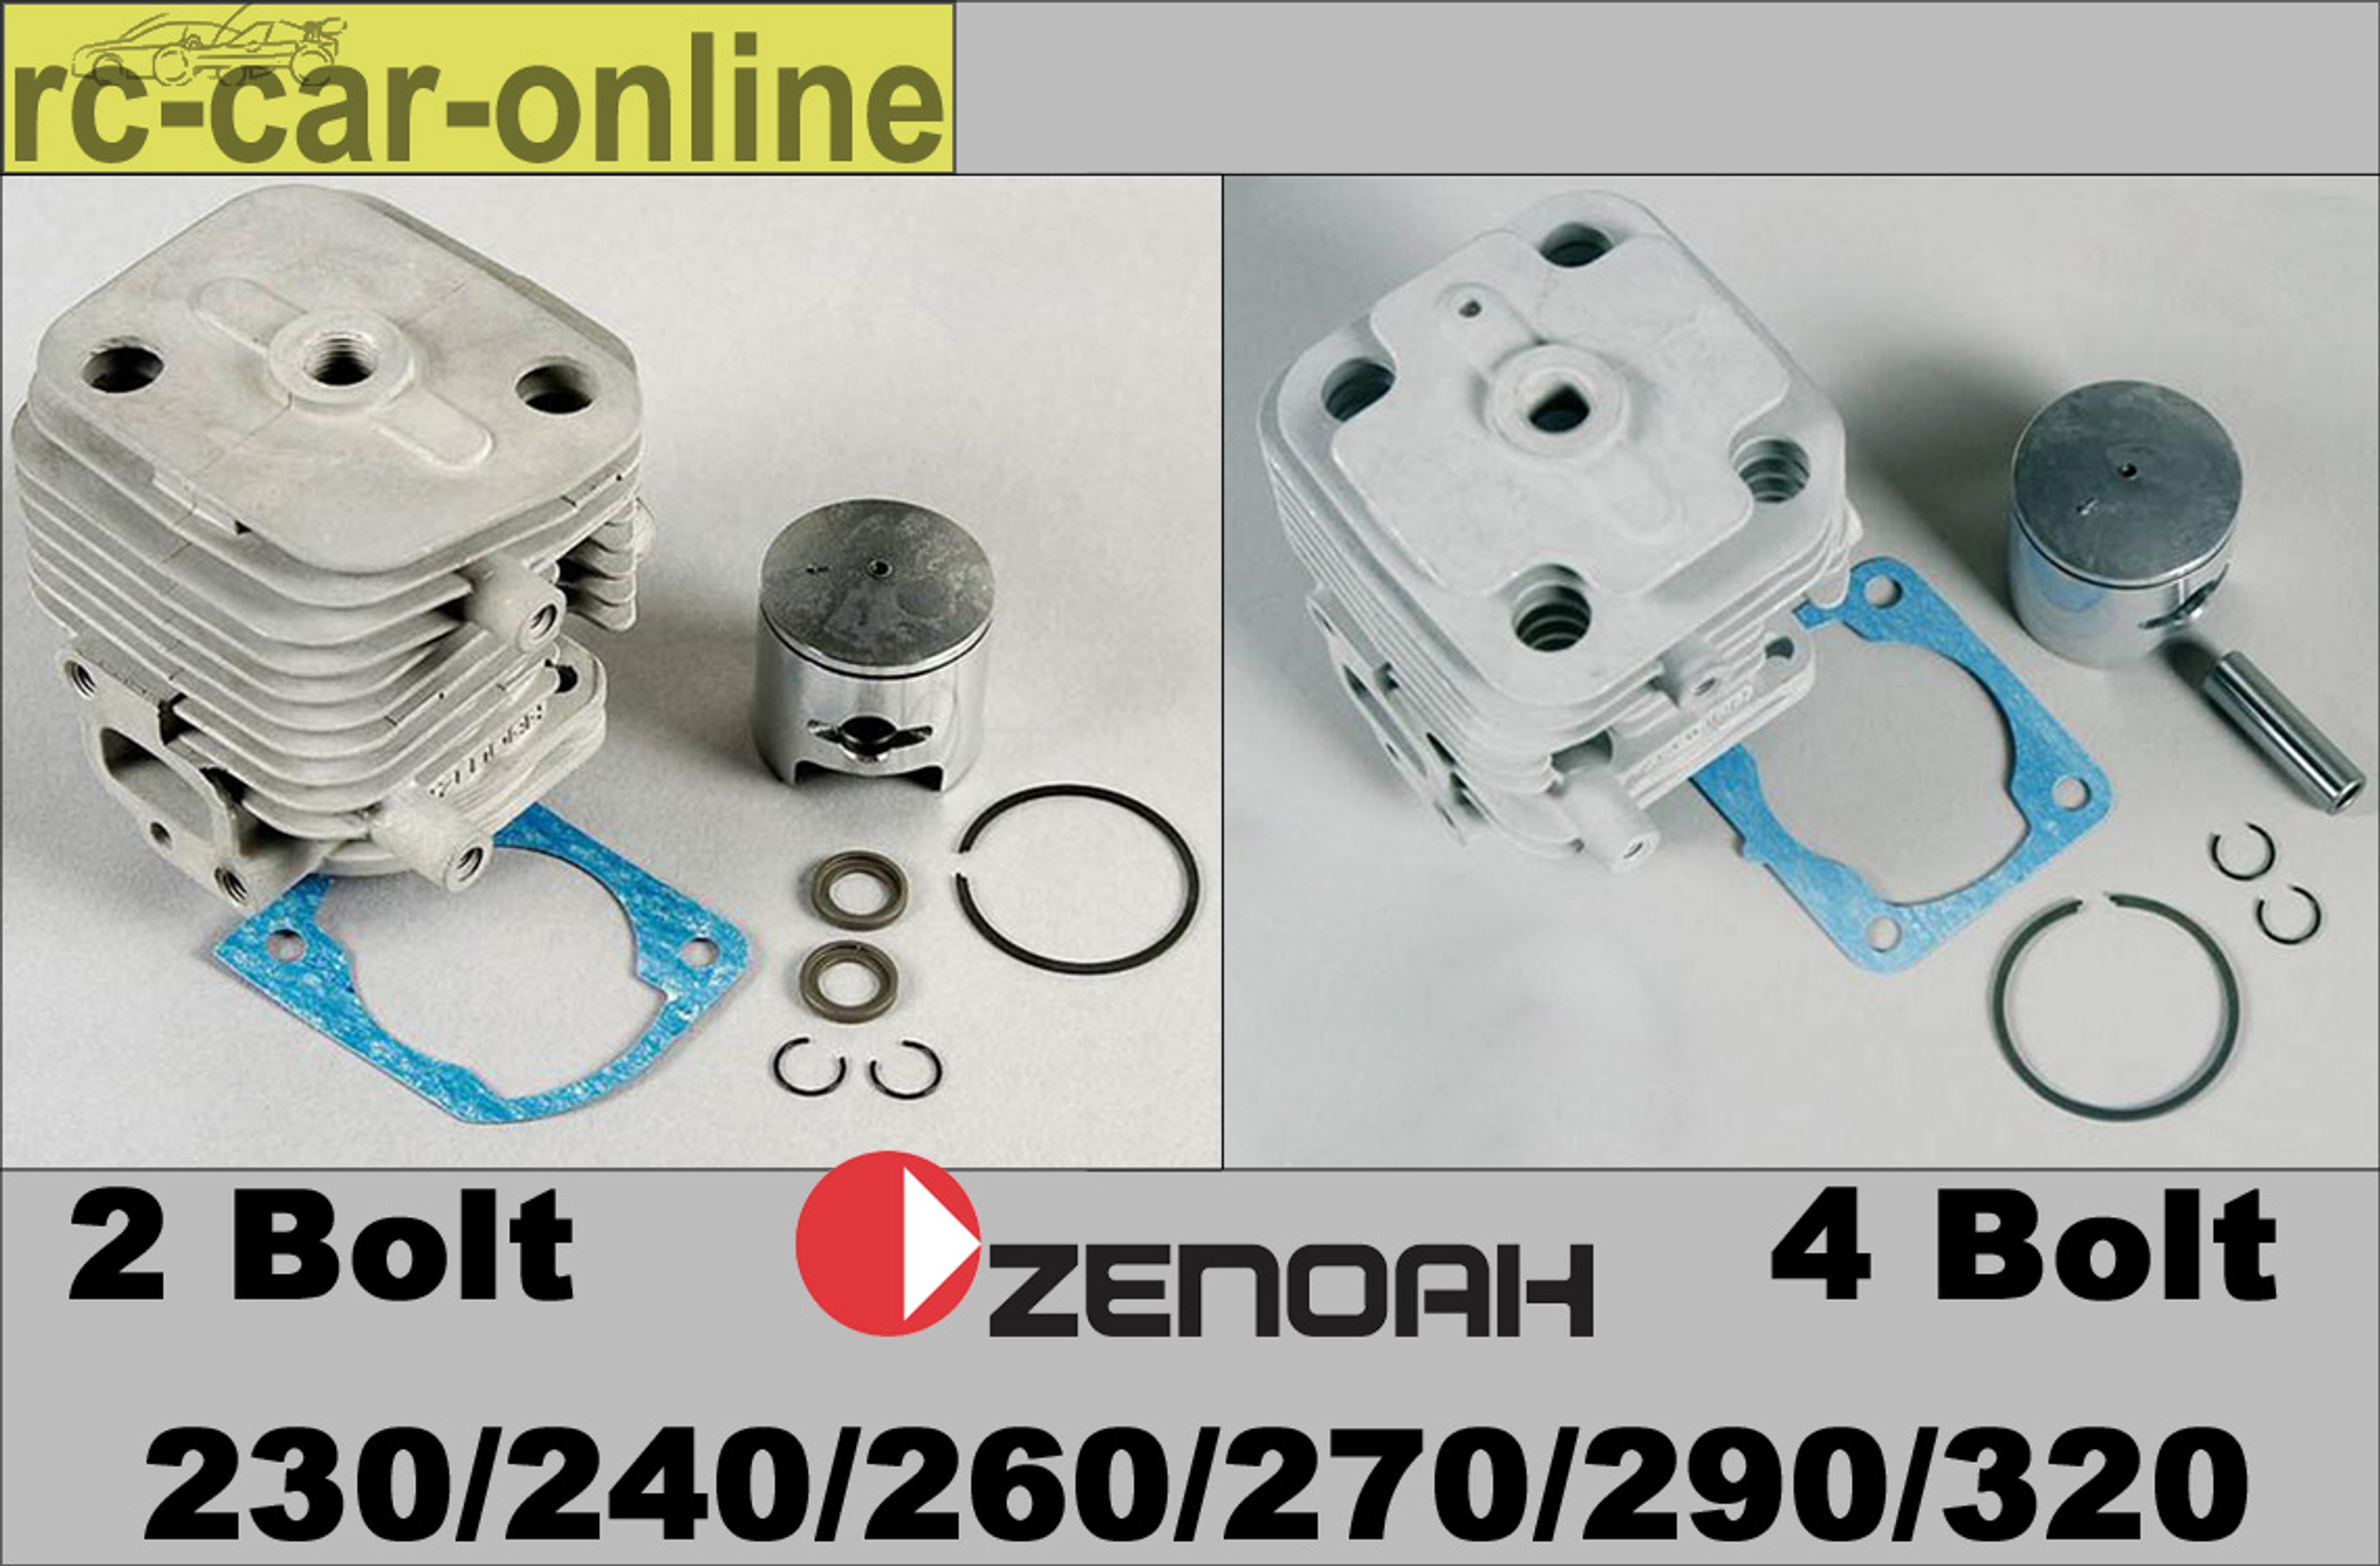 Original Zenoah repair-kits for 230/240/260/270/290/320 engines